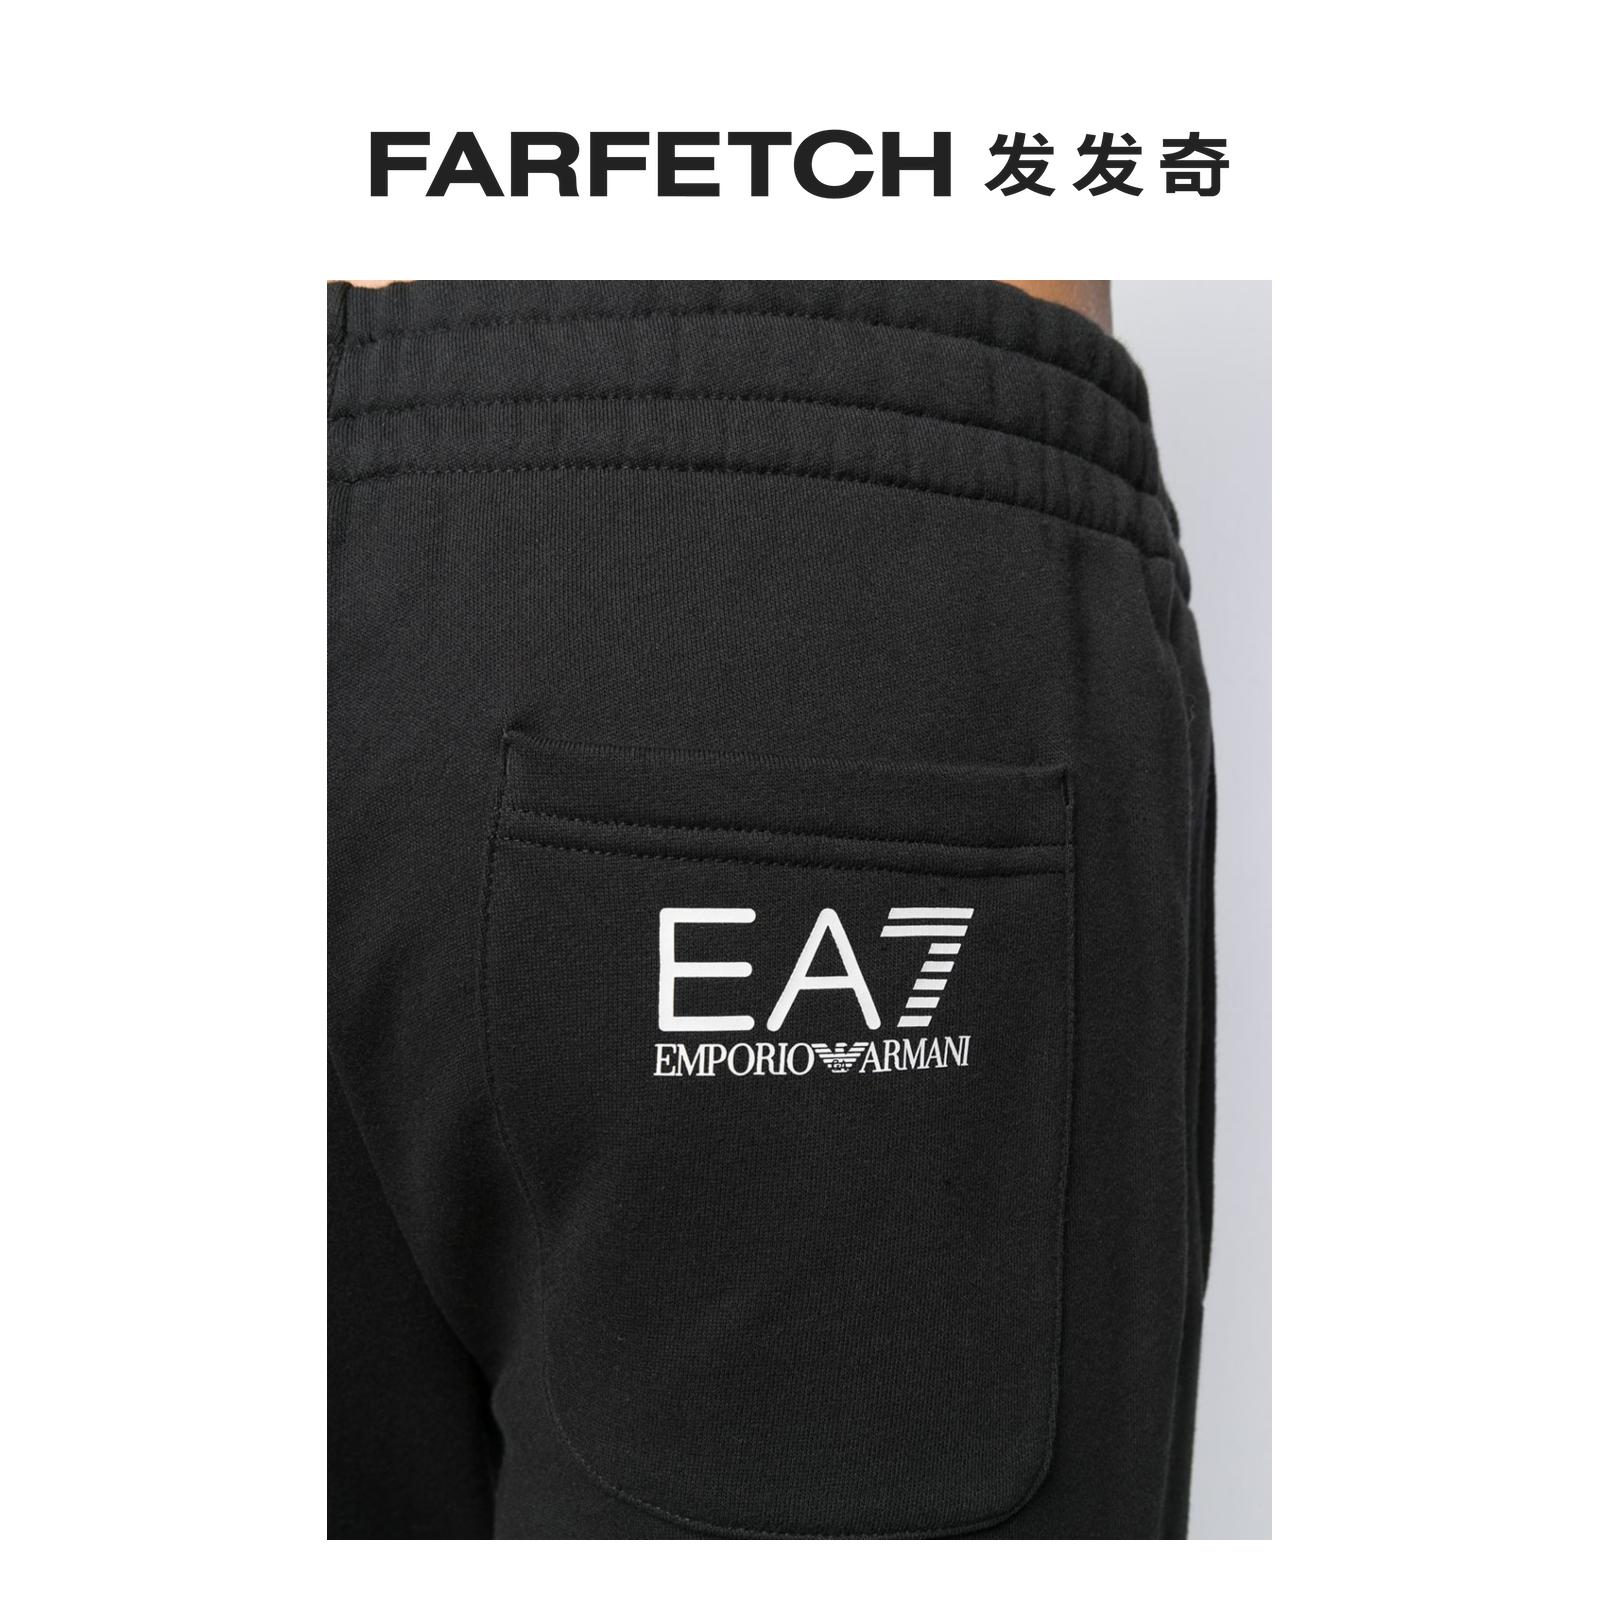 Ea7 Emporio Armani男士logo缩口运动裤FARFETCH发发奇-图3